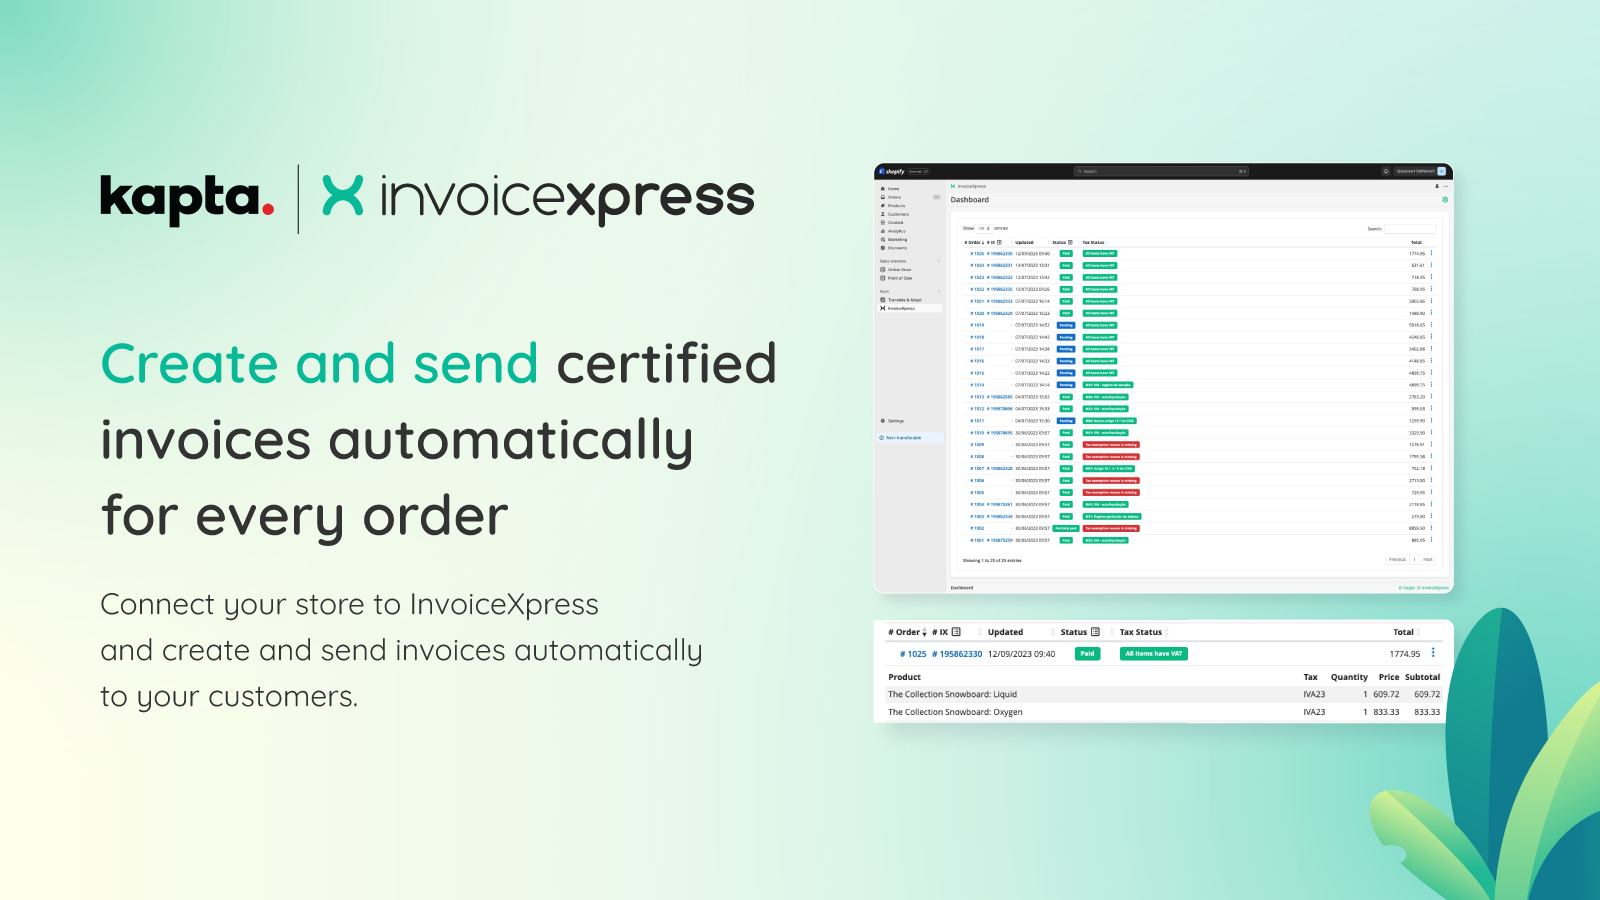 InvoiceXpress erstellt und sendet zertifizierte Rechnungen